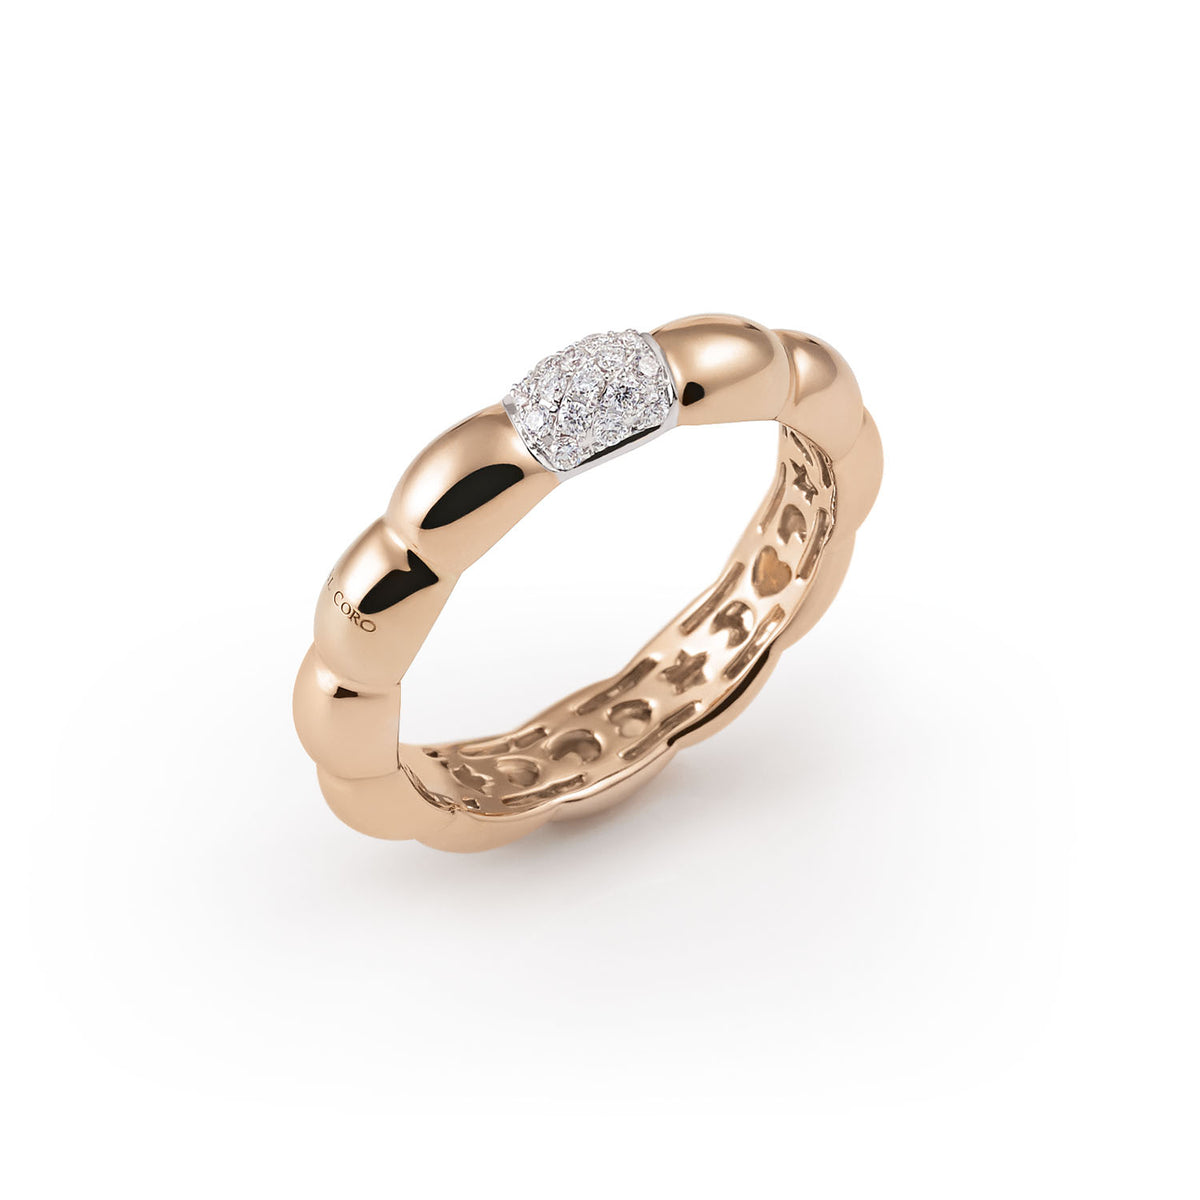 Al Coro La Piazza Ring Diamonds 18k Gold - Orsini Jewellers